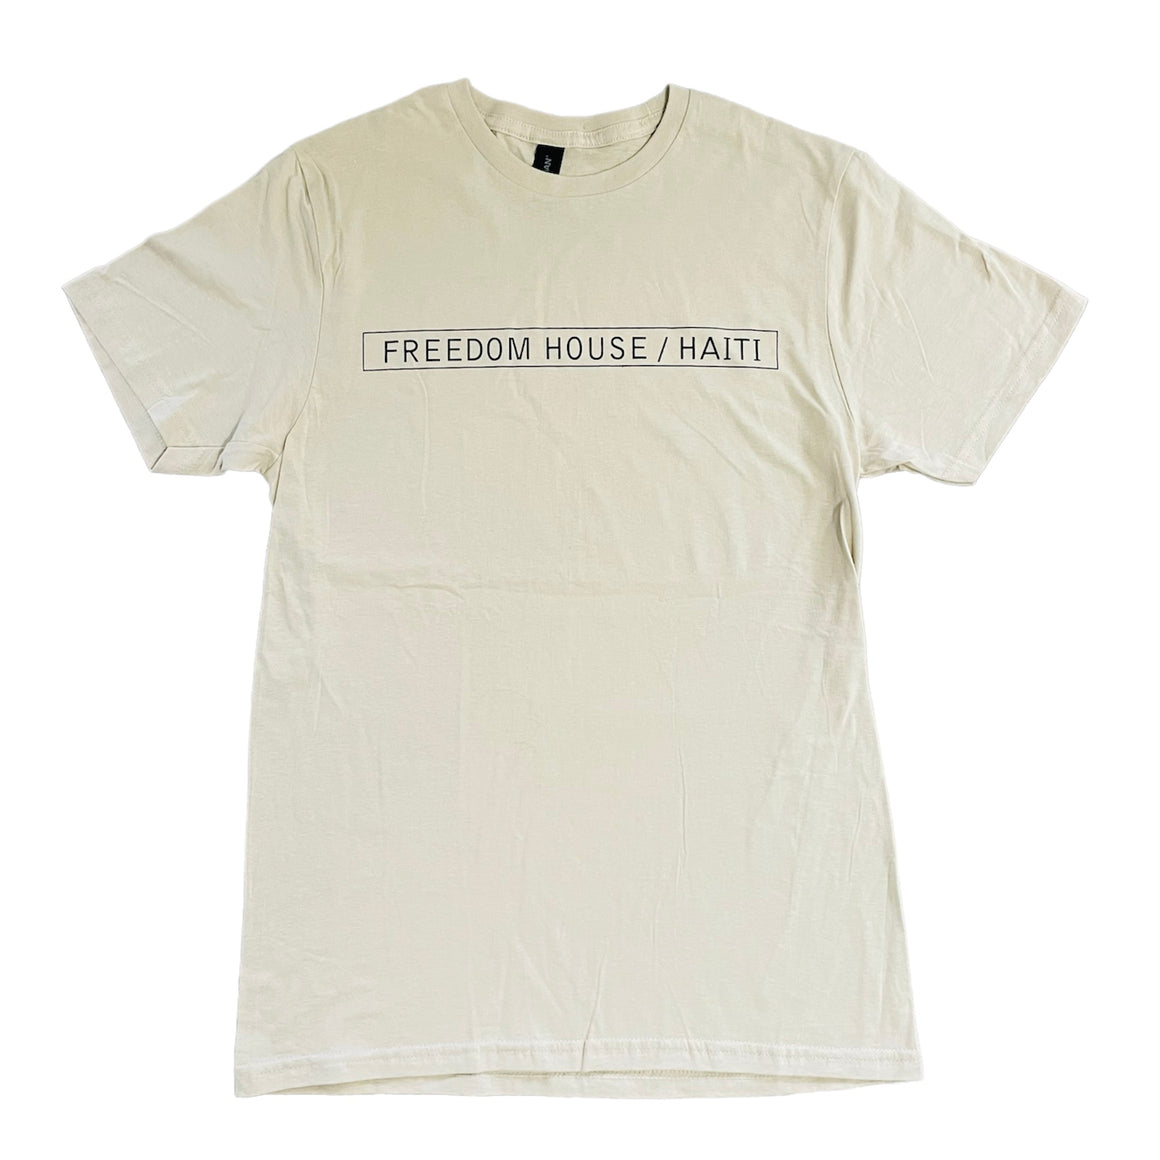 Unisex T-shirts (Adult Sizes)